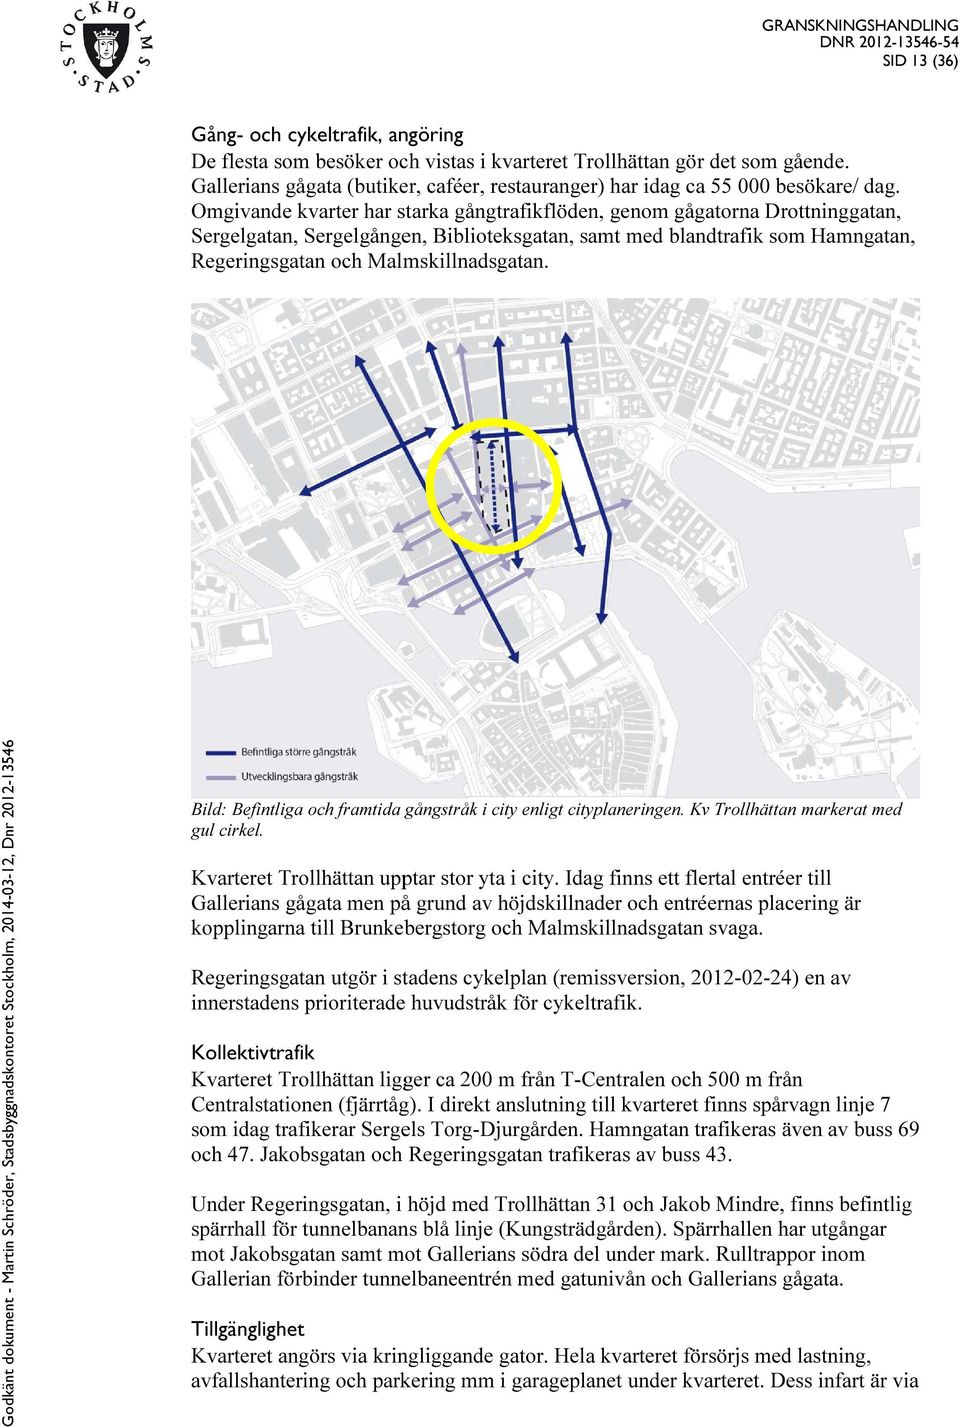 Omgivande kvarter har starka gångtrafikflöden, genom gågatorna Drottninggatan, Sergelgatan, Sergelgången, Biblioteksgatan, samt med blandtrafik som Hamngatan, Regeringsgatan och Malmskillnadsgatan.